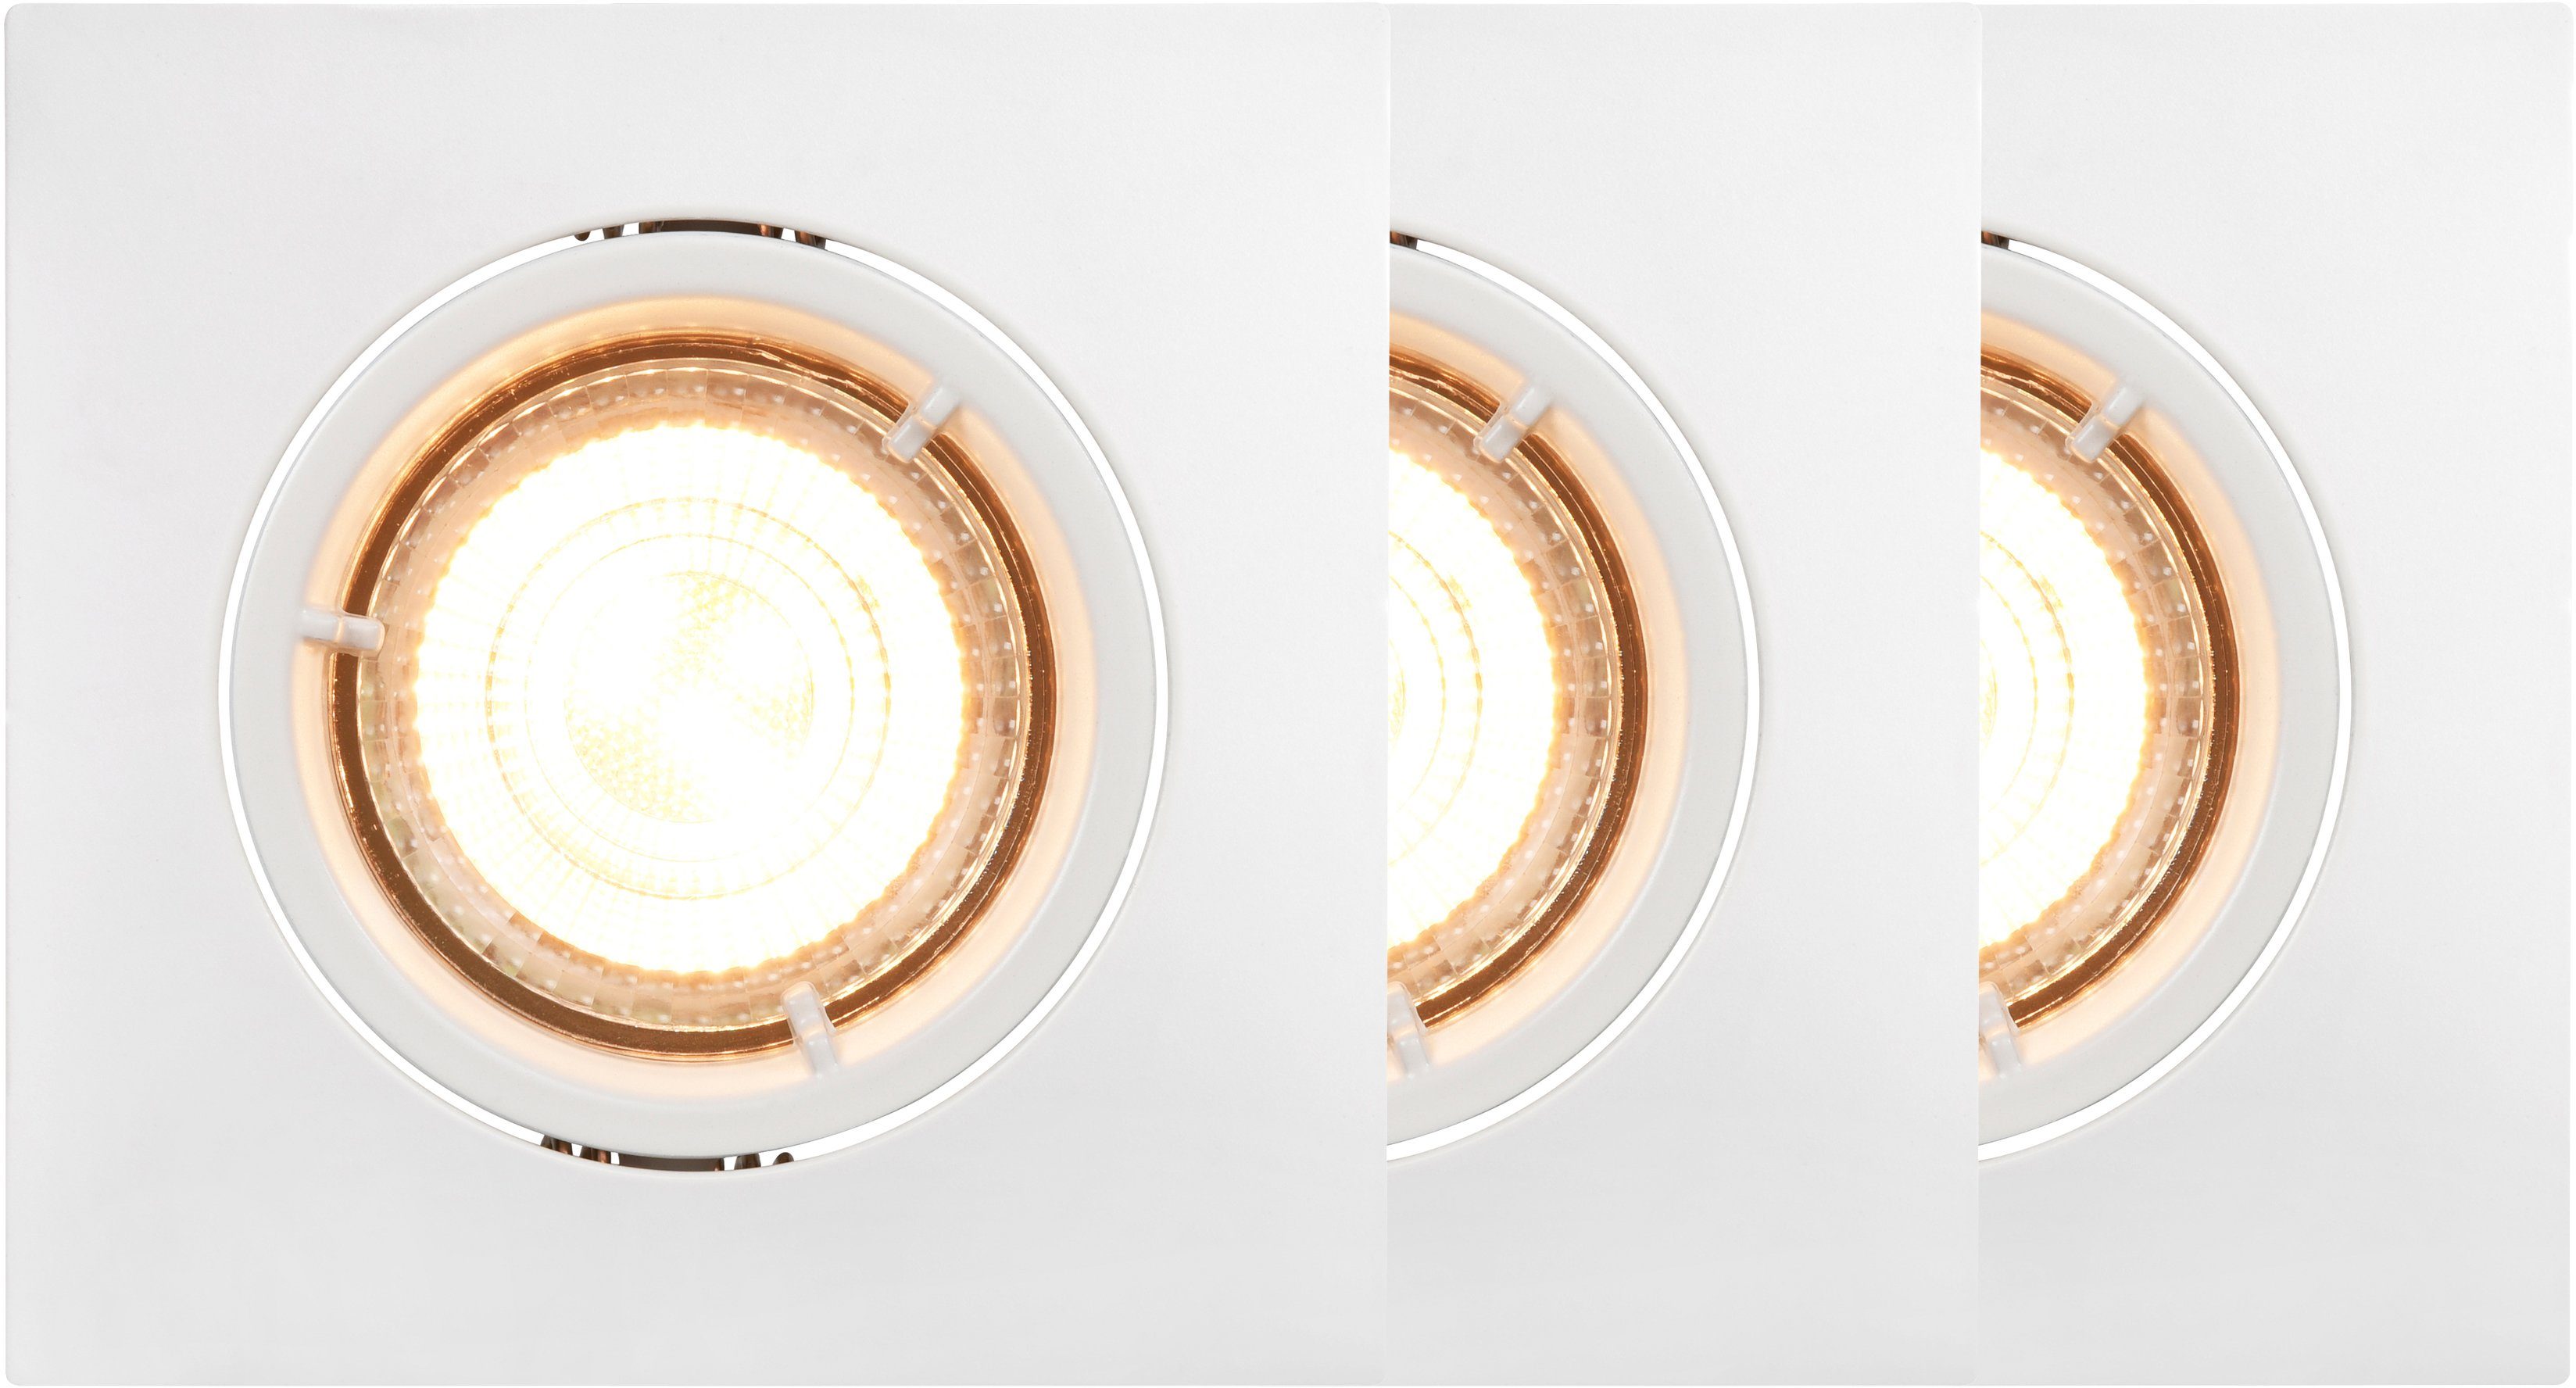 Nordlux Slim ledlampje Carina Smartlight Nordlux Smart Light, lampen inbegrepen en verwisselbaar, set van 3, gemakkelijke montage